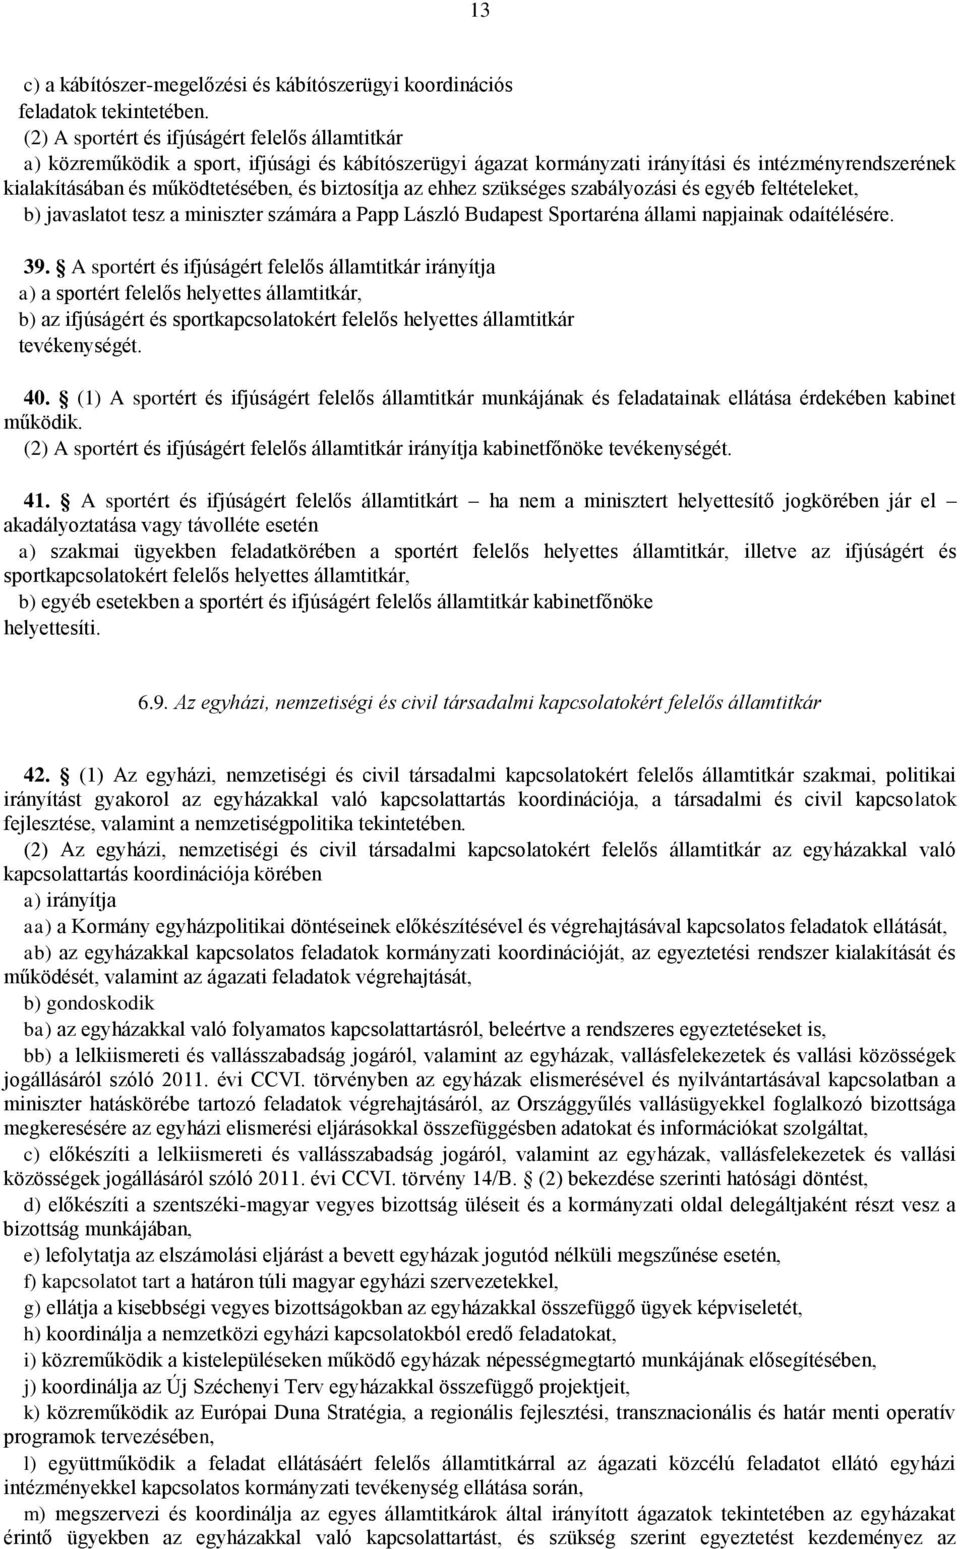 ehhez szükséges szabályozási és egyéb feltételeket, b) javaslatot tesz a miniszter számára a Papp László Budapest Sportaréna állami napjainak odaítélésére. 39.